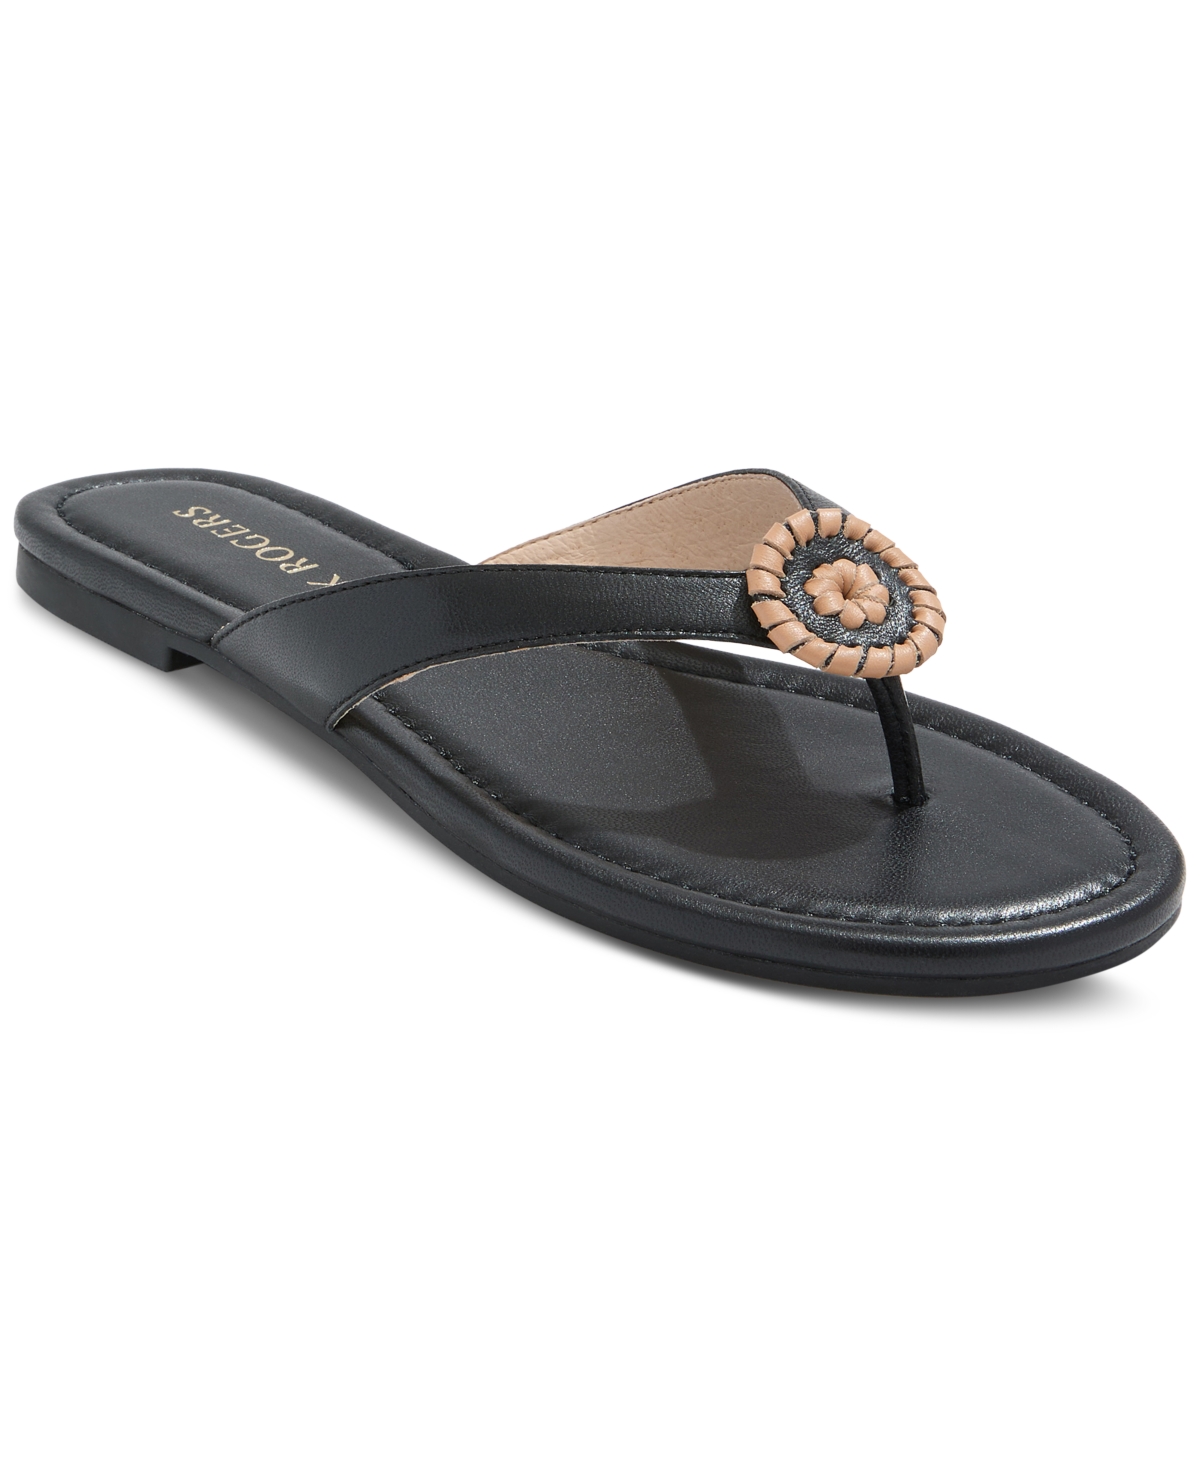 Women's Roxy Whipstitch Flip Flop Sandals - Black, Toast